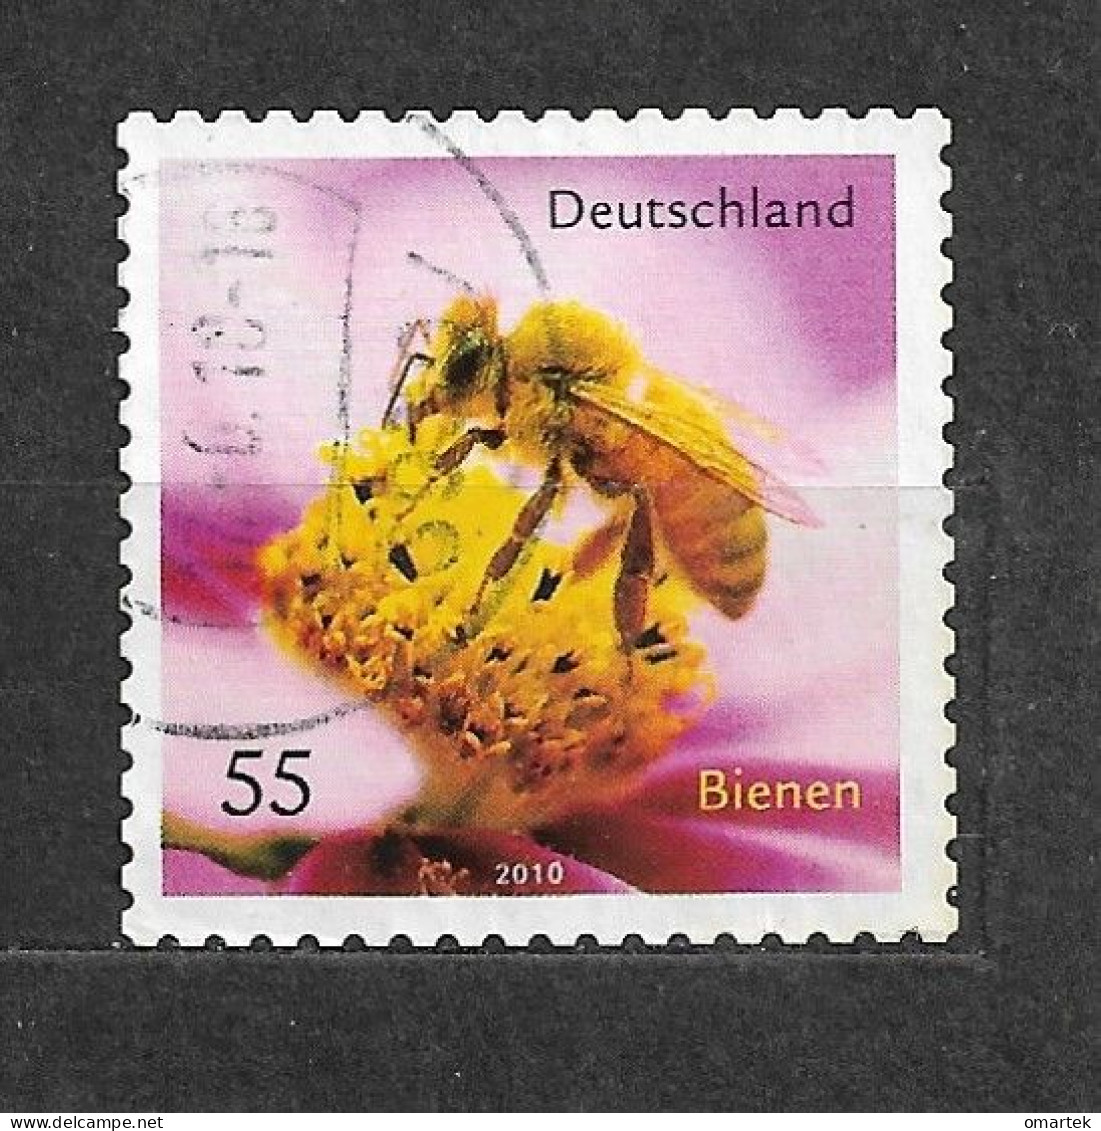 Deutschland Germany BRD 2010 ⊙ Mi 2799 Bienen. Honey Bee. - Usati